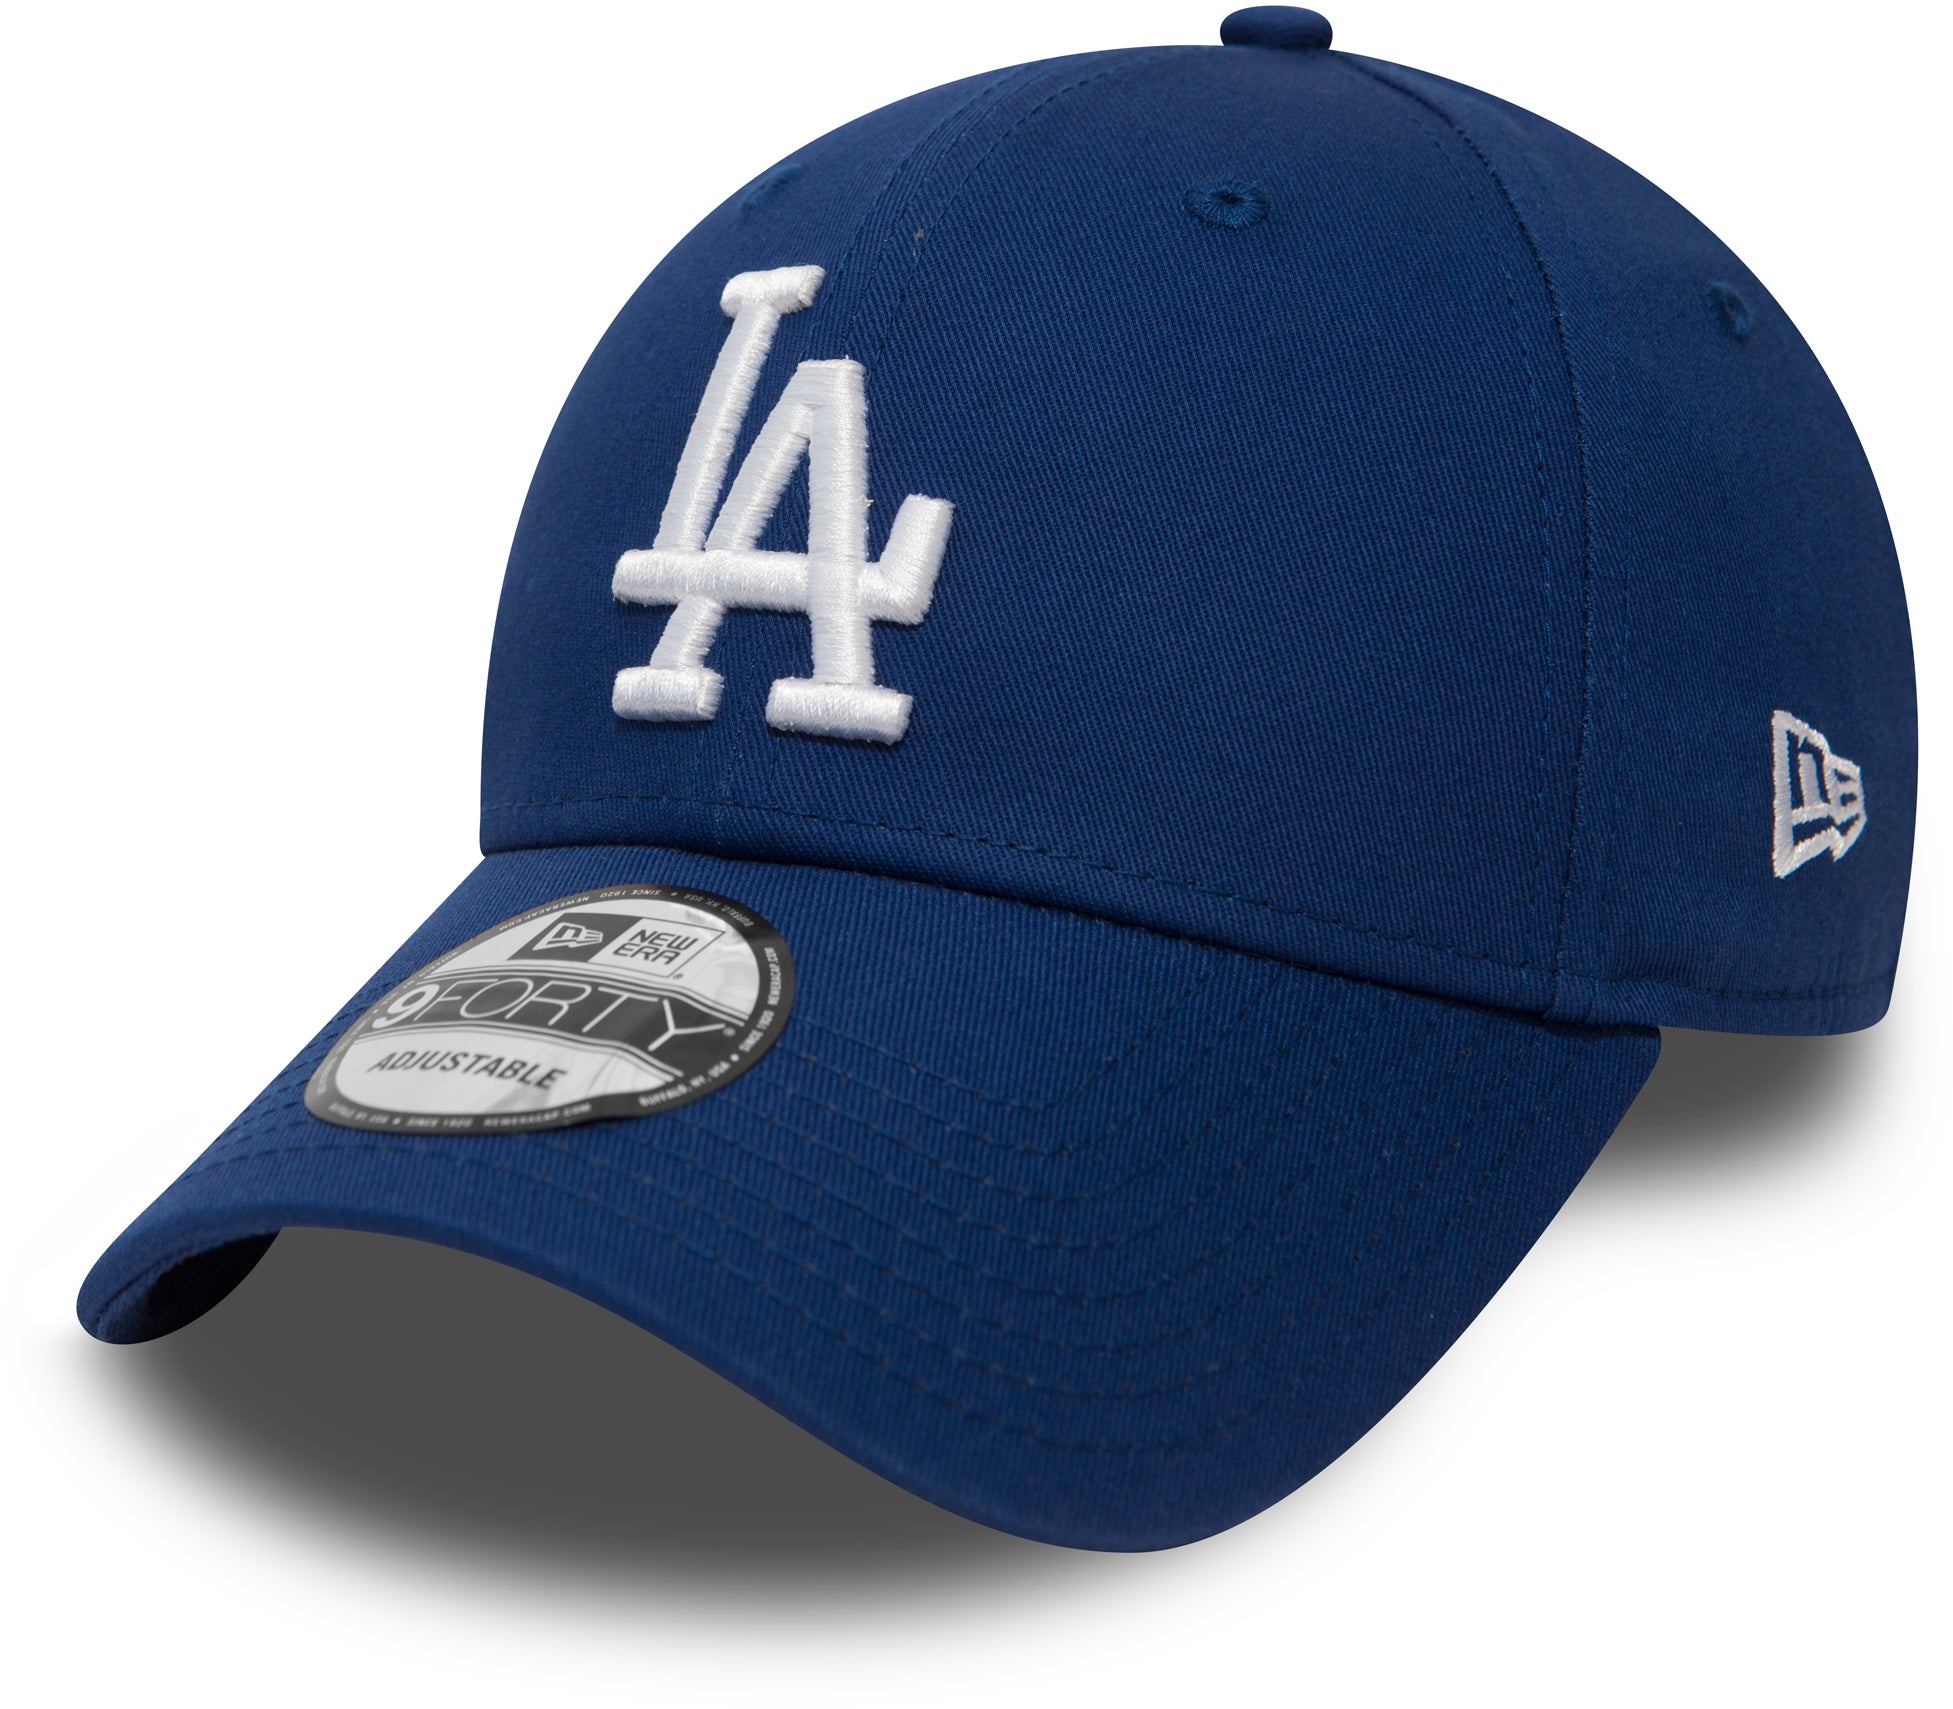 LA Dodgers New Era 940 League Essential Royal Blue Baseball Cap